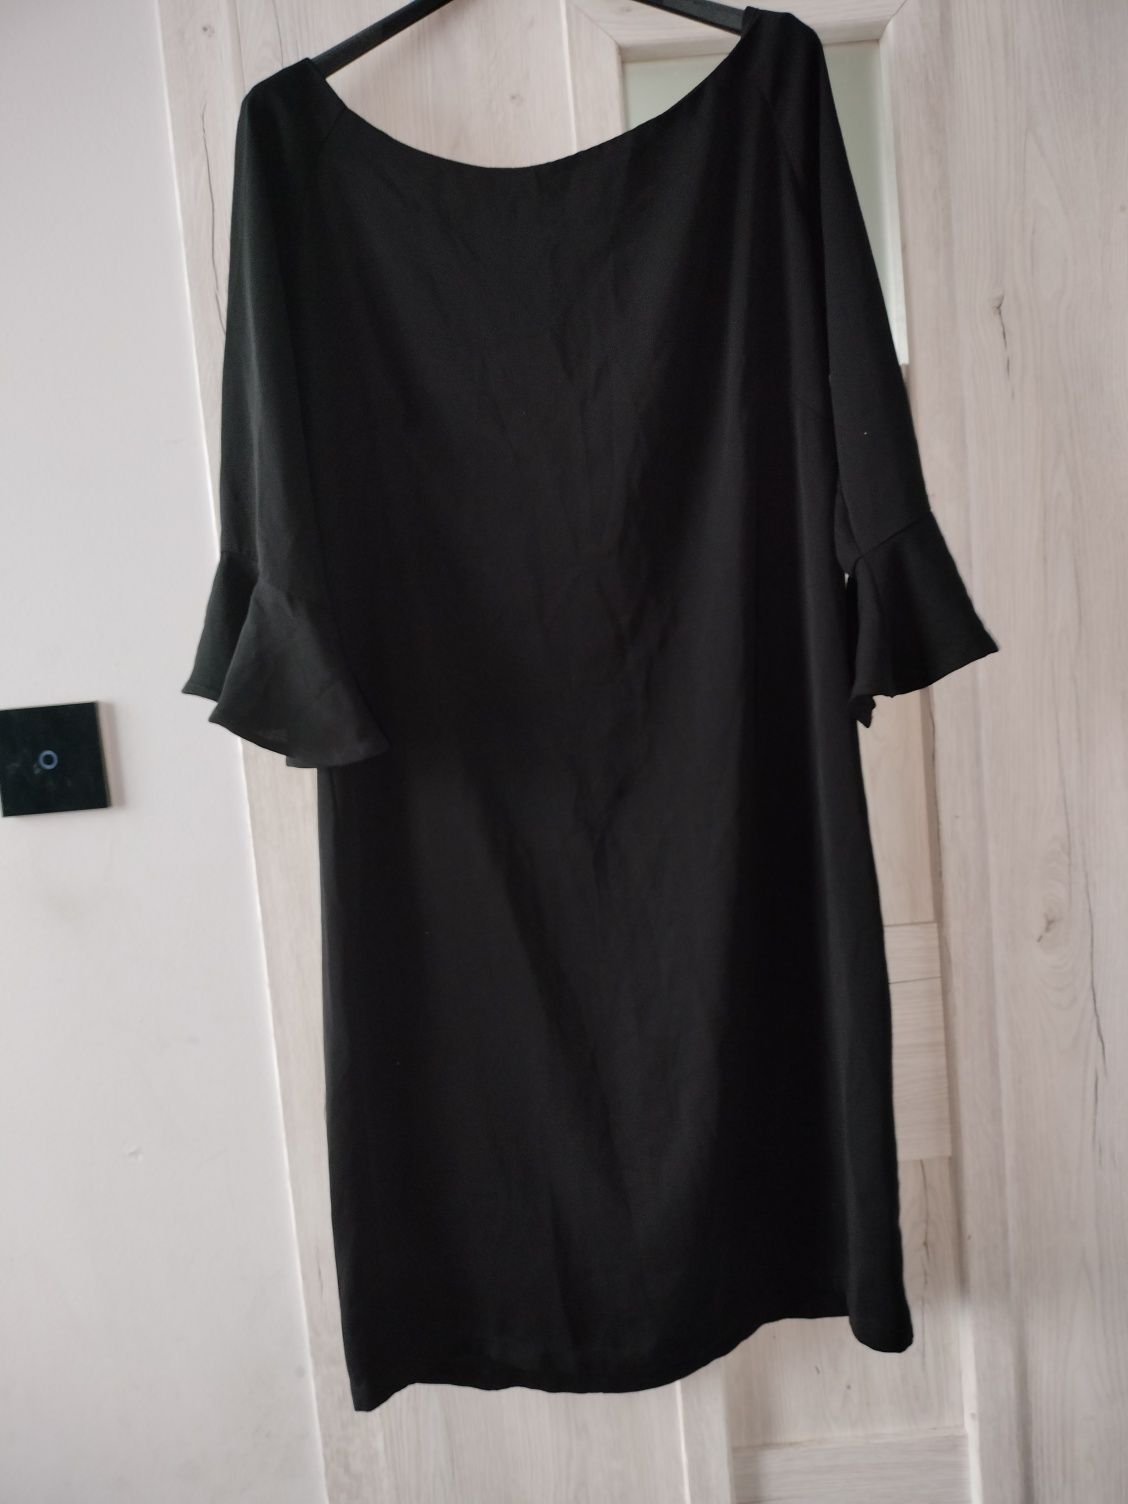 Czarna sukienka elegancka wizytowa 36/38 święta sylwester mała czarna